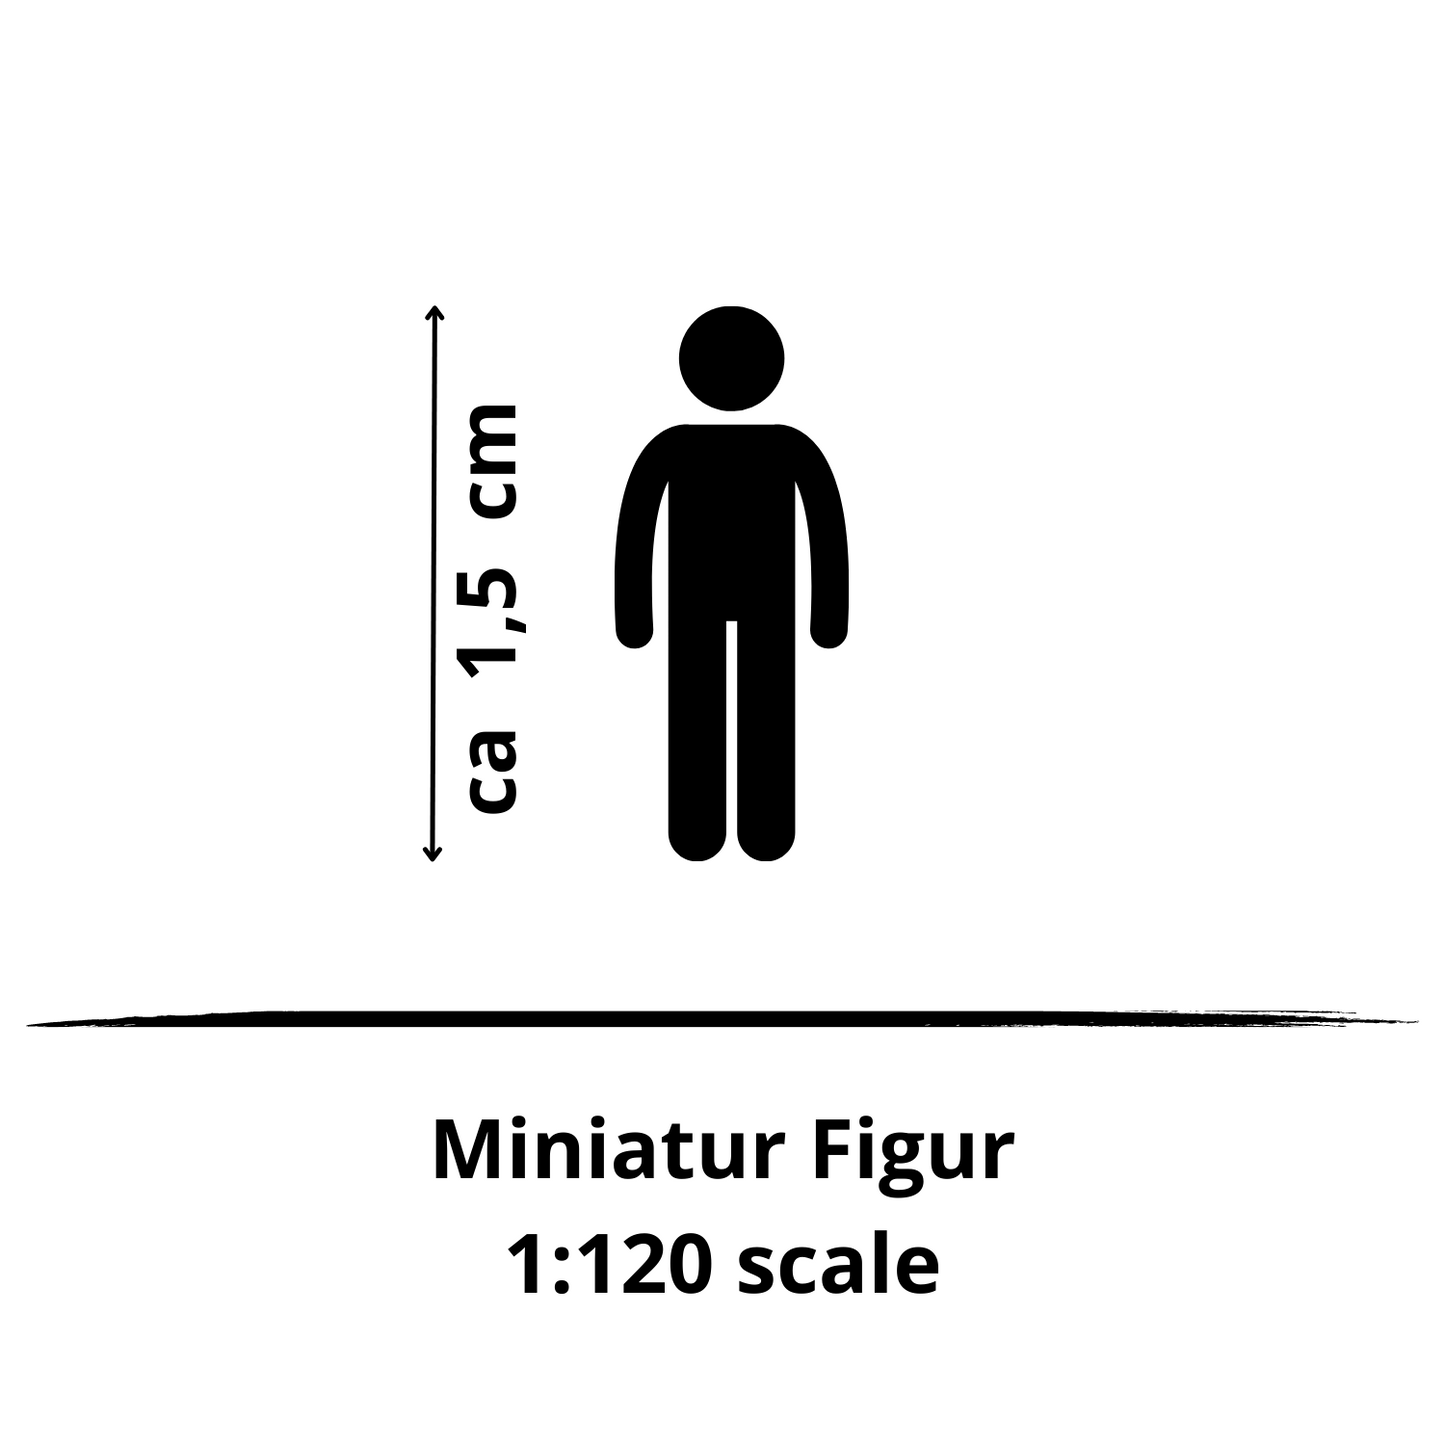 1:120 miniature figure